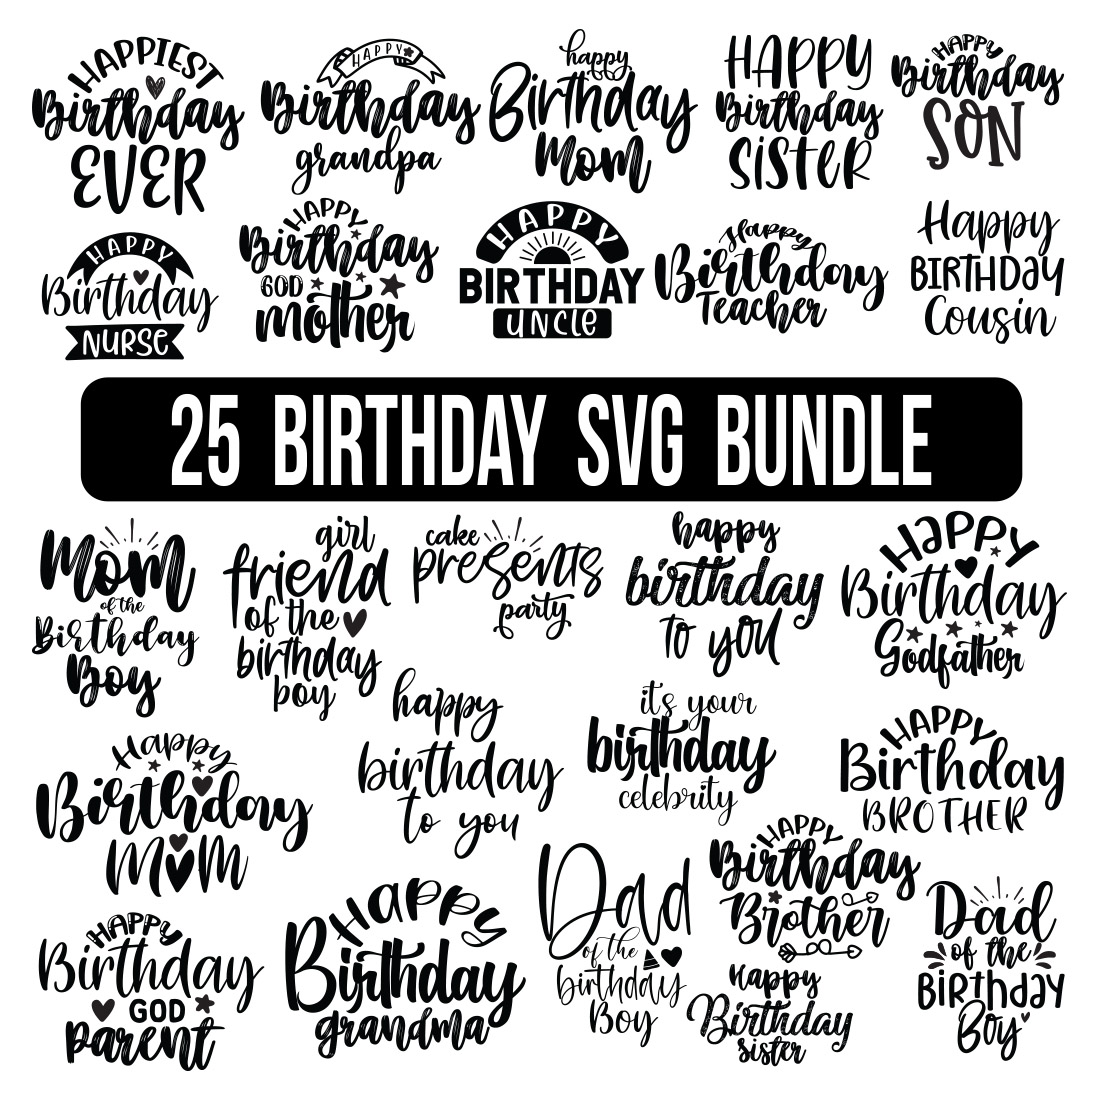 Birthday SVG Bundle, Birthday SVG, Birthday Girl svg, Birthday Shirt SVG, Gift for Birthday svg, Wishes for Birthday, Birthday Bundle SVG, cover image.